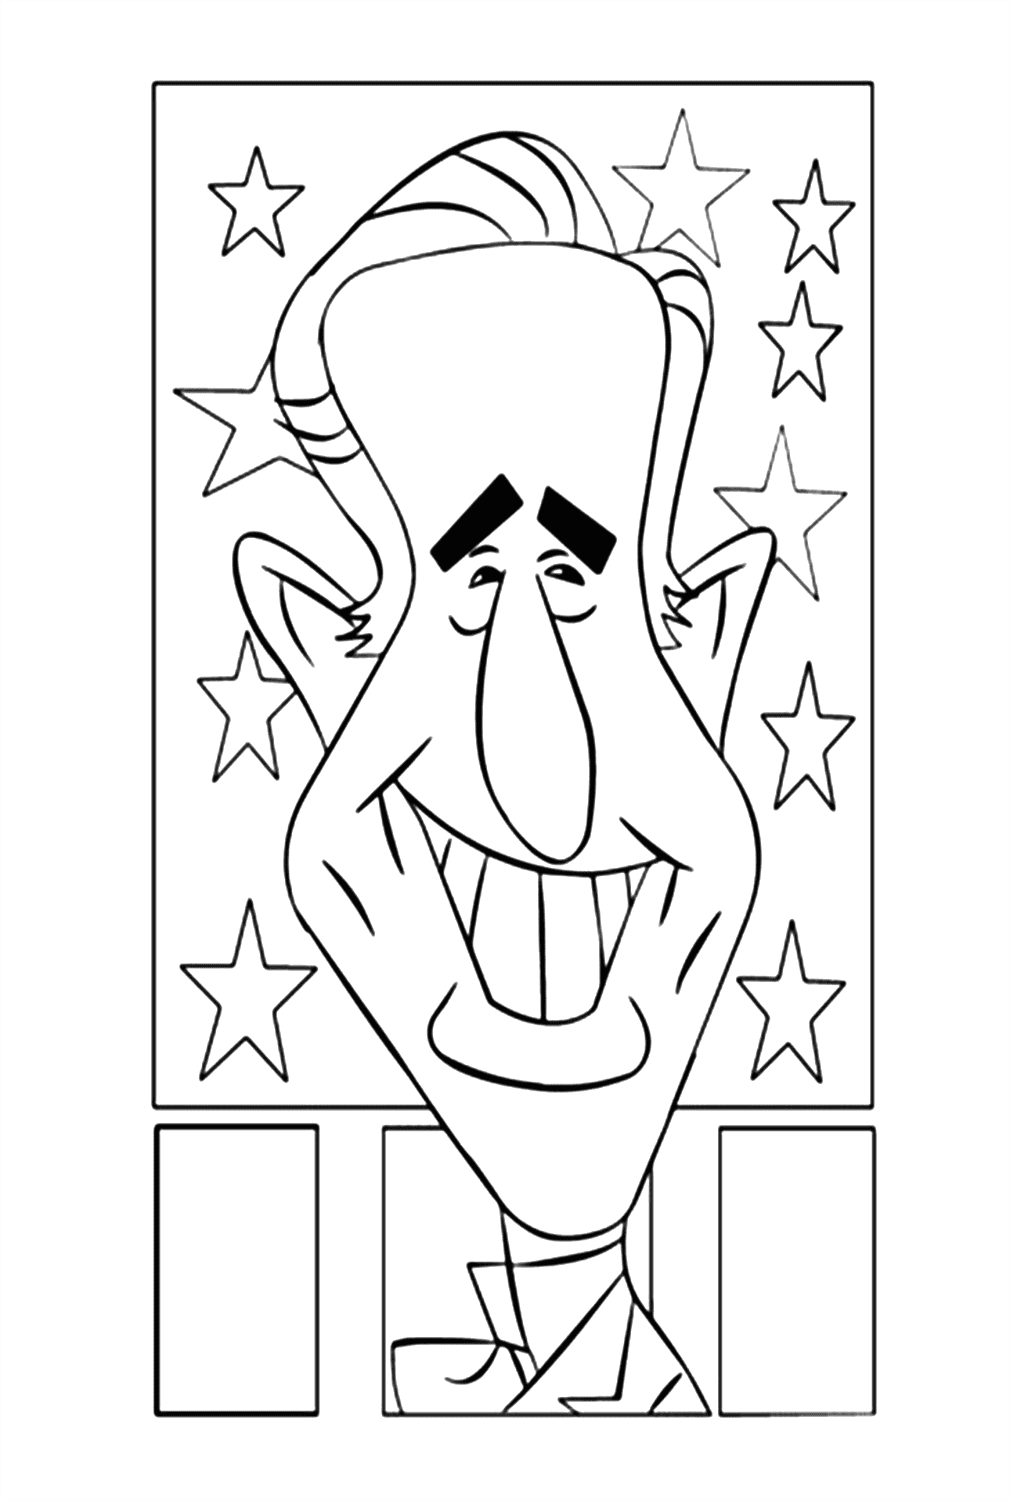 Joe Biden Laugh Coloring Page